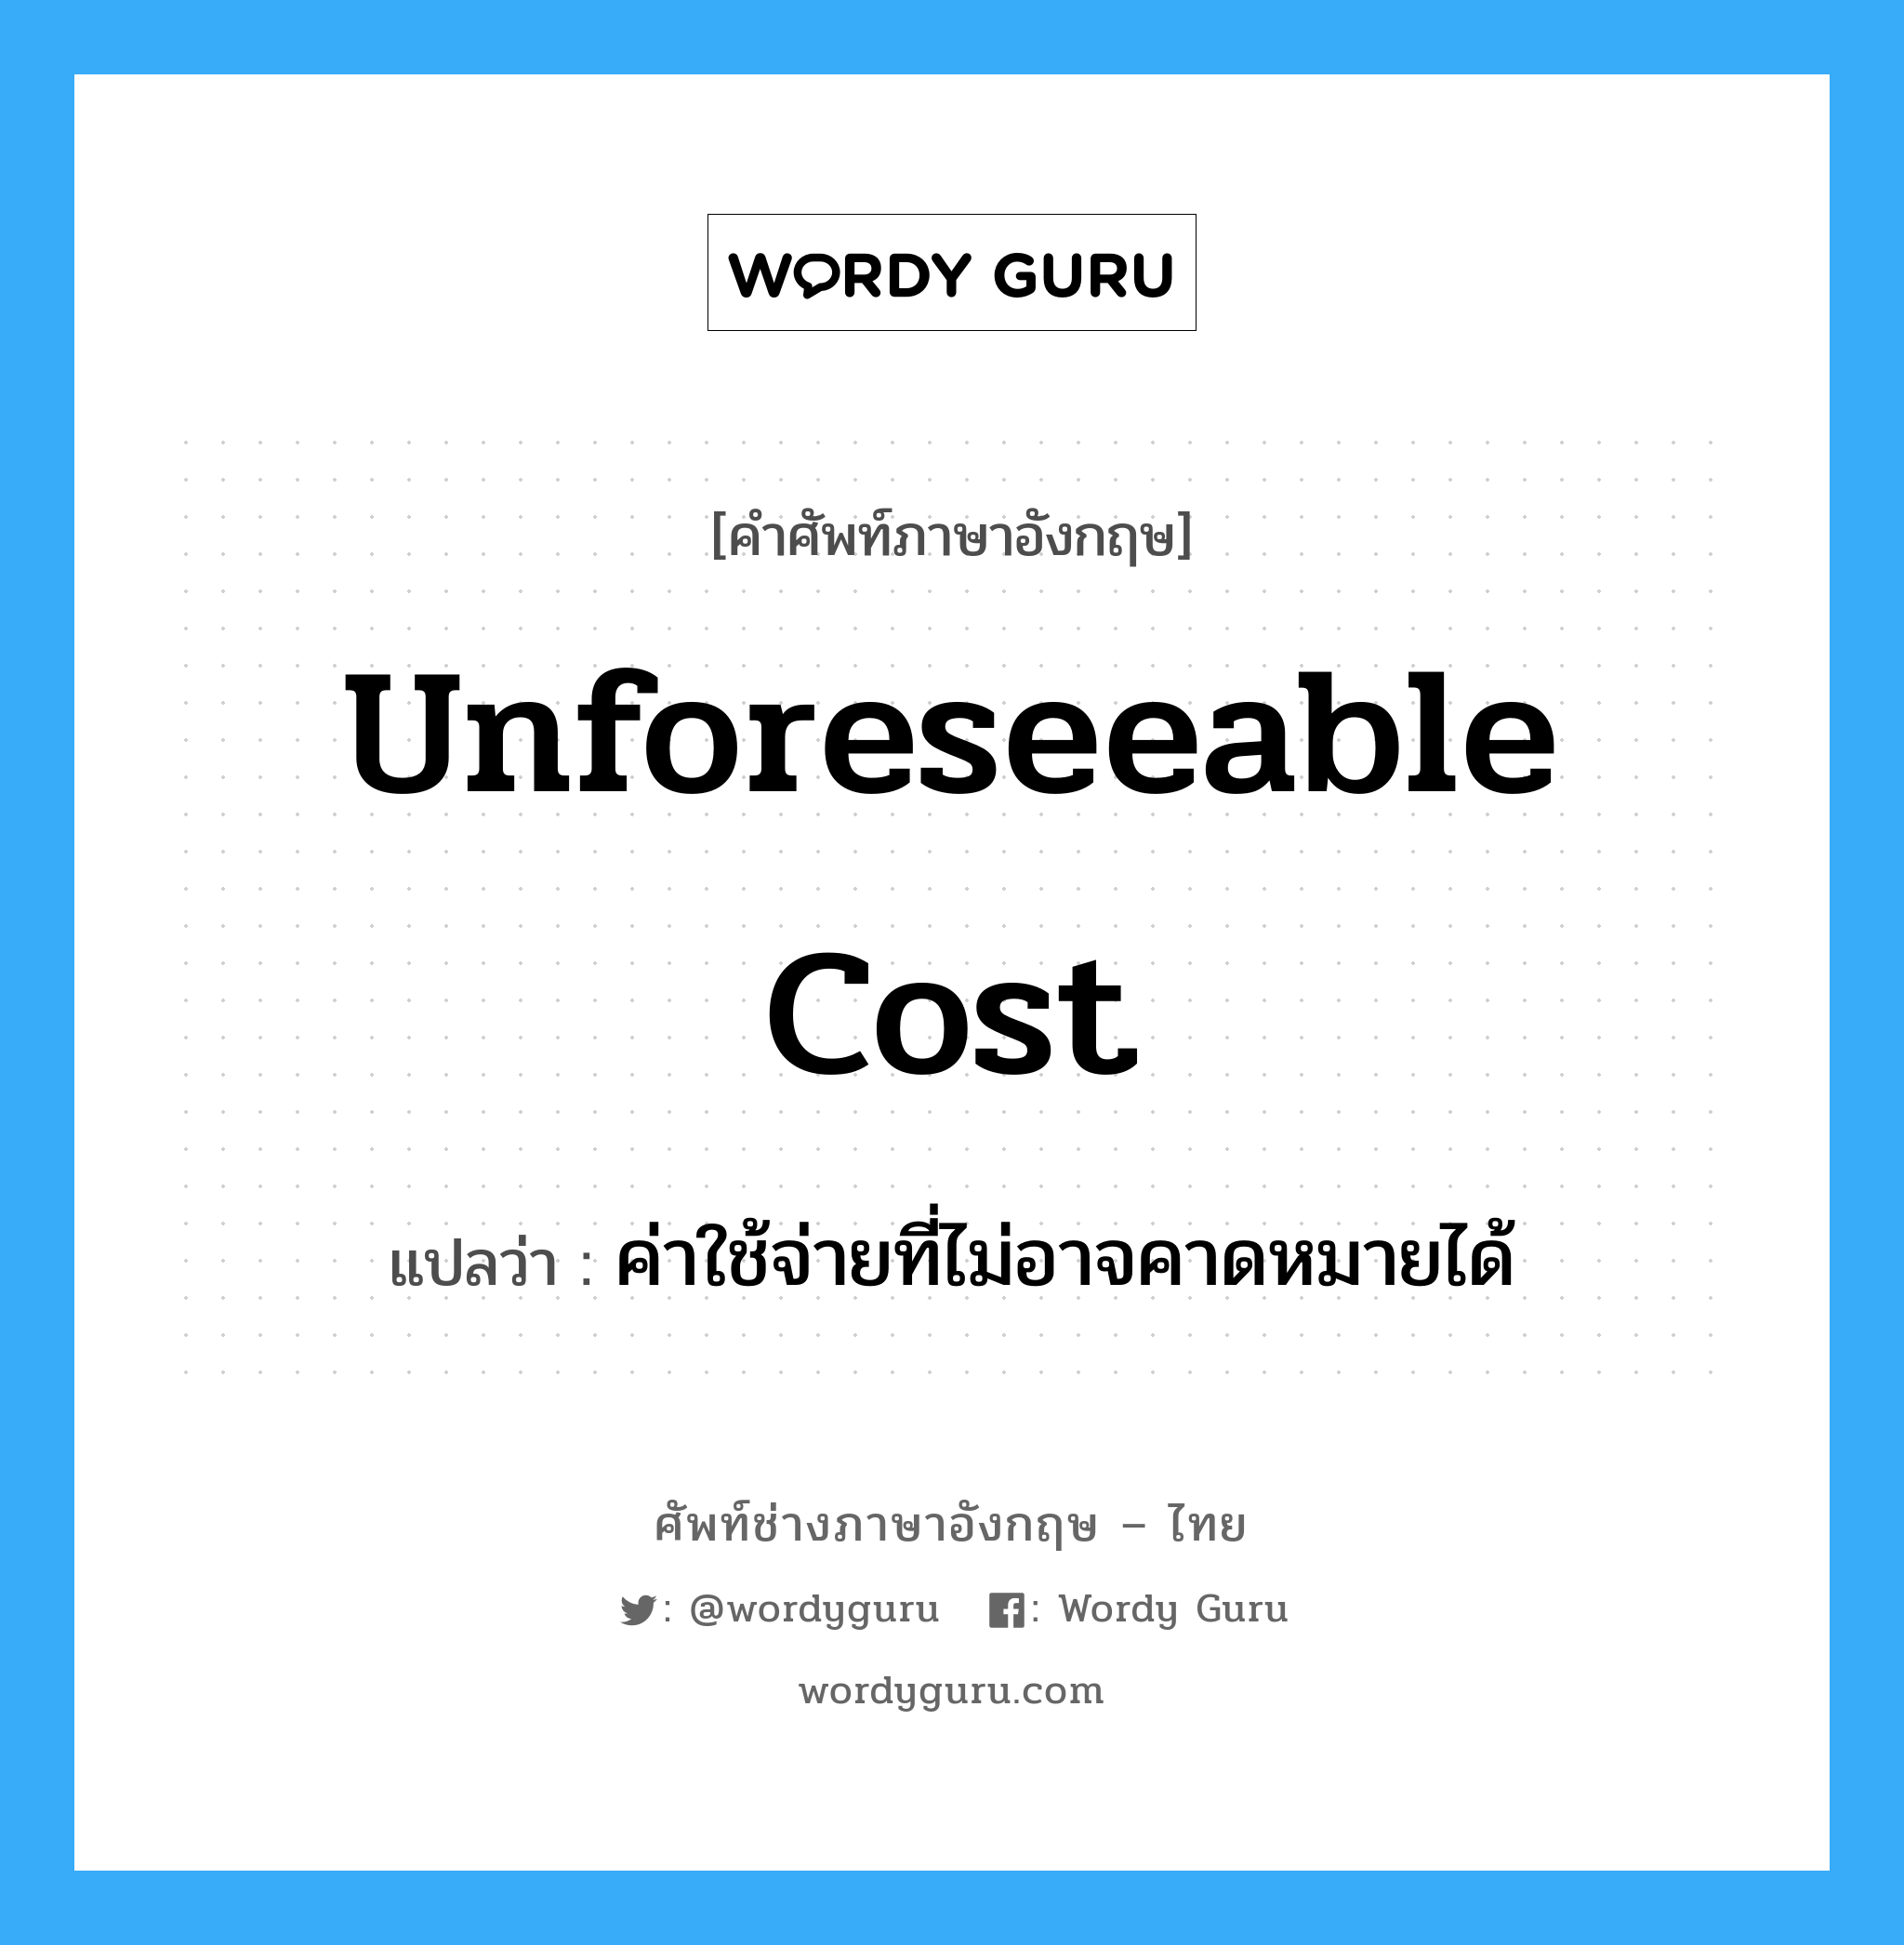 Unforeseeable Cost แปลว่า?, คำศัพท์ช่างภาษาอังกฤษ - ไทย Unforeseeable Cost คำศัพท์ภาษาอังกฤษ Unforeseeable Cost แปลว่า ค่าใช้จ่ายที่ไม่อาจคาดหมายได้